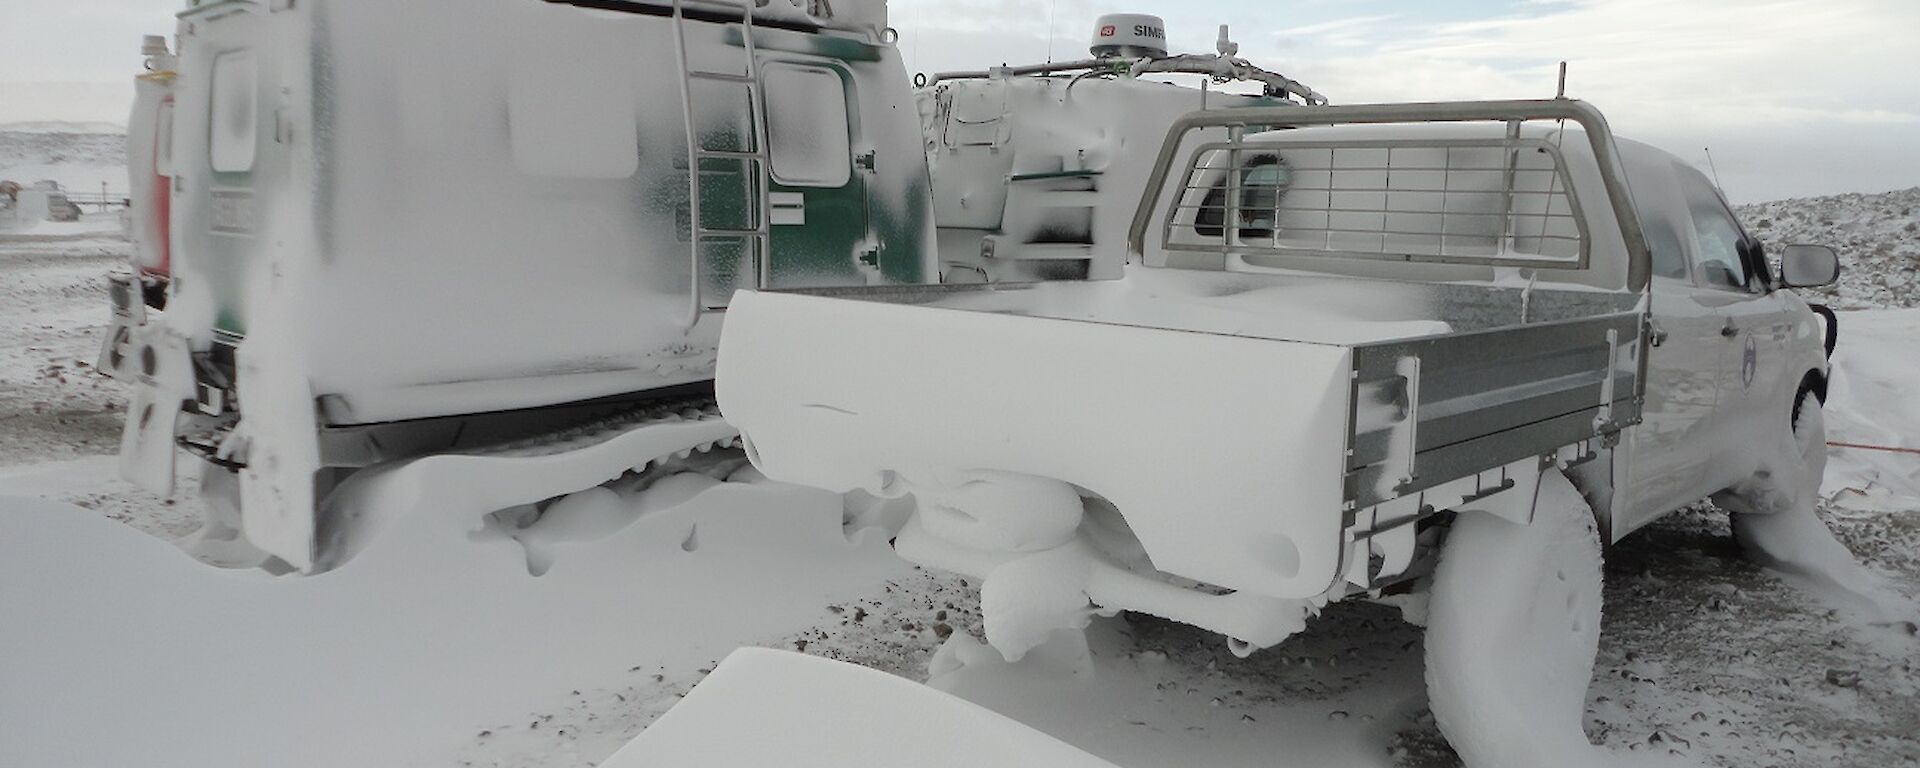 Snow in rear of truck